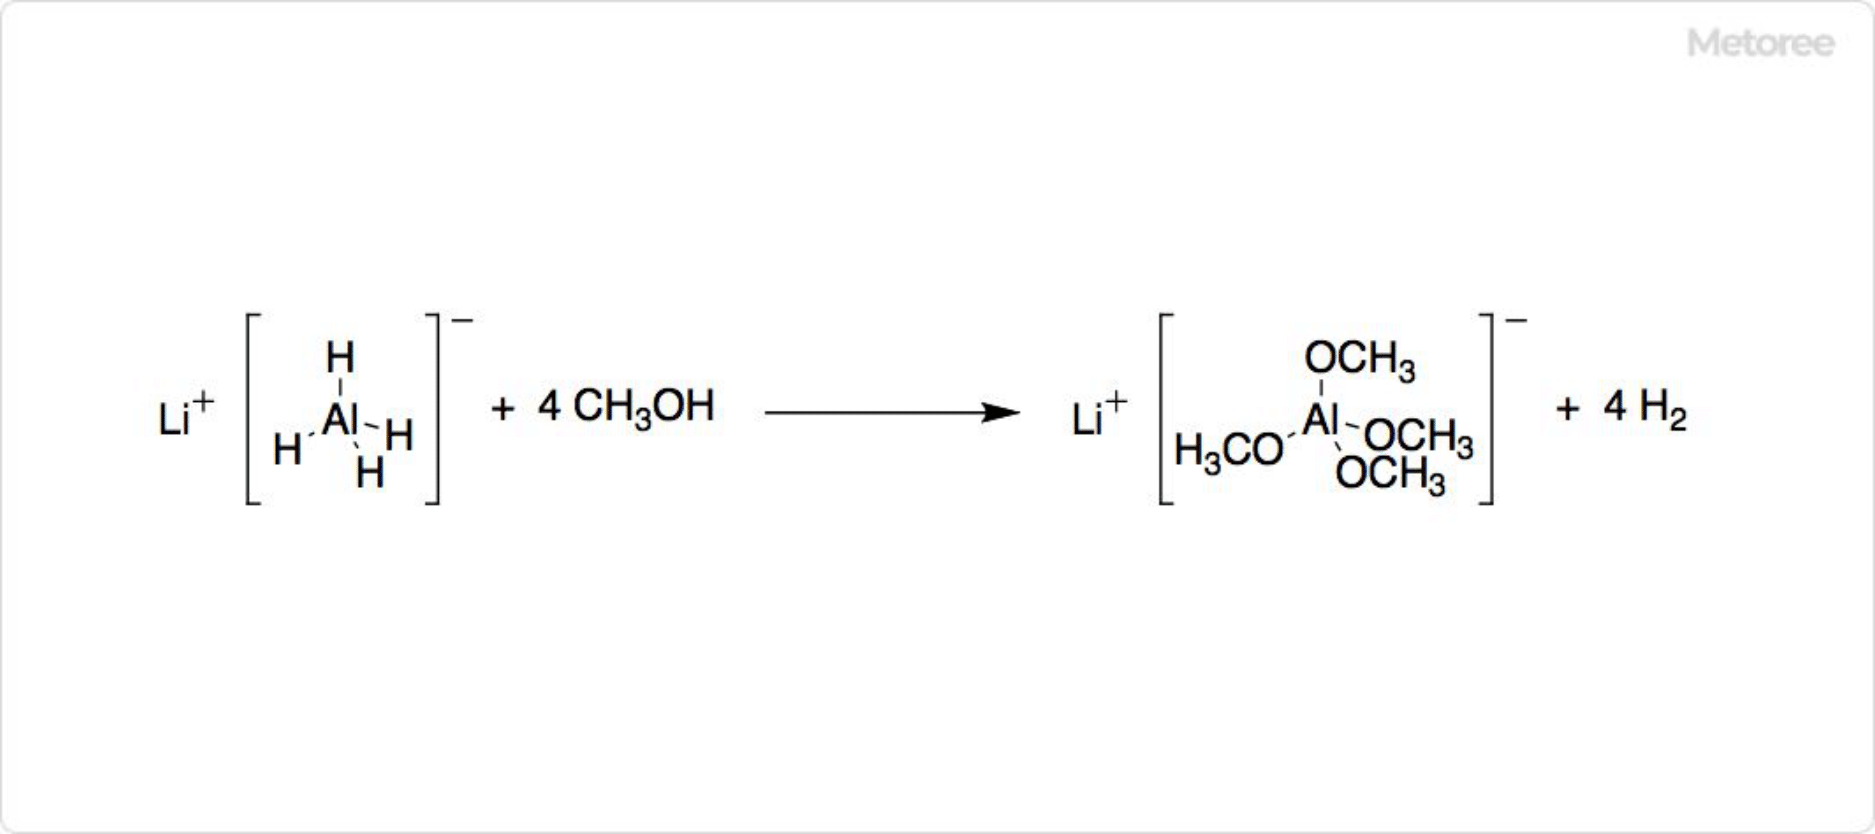 水素化リチウムアルミニウムの分解反応